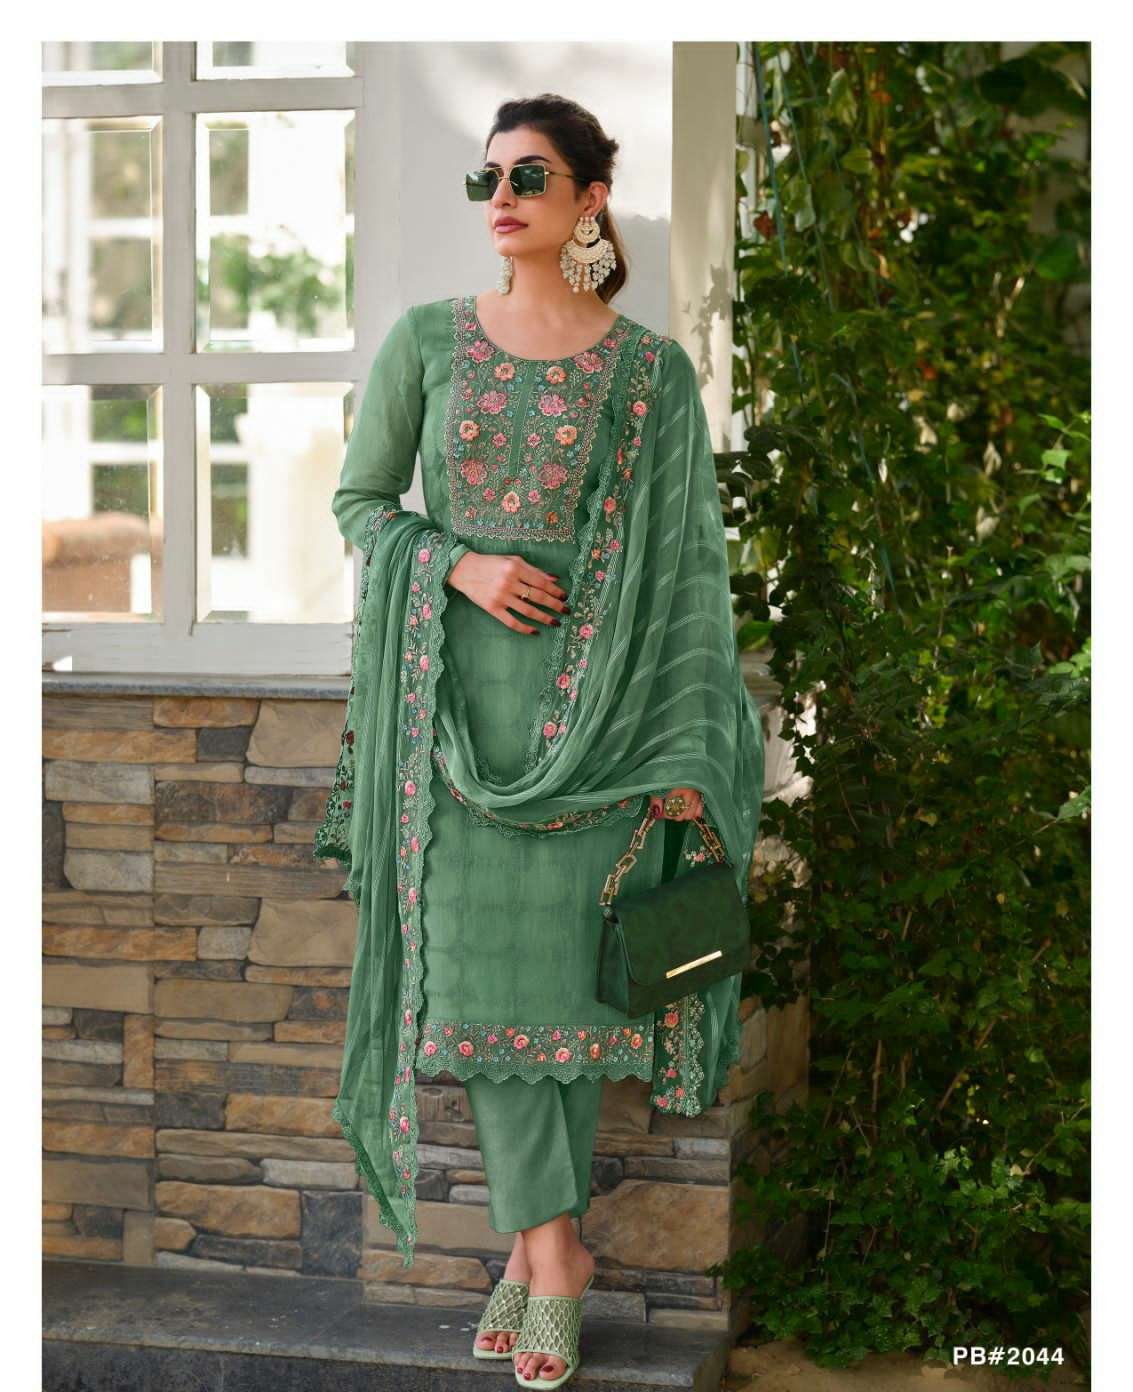 avon trendz pastel breeze 2041-2044 series latest designer organza embroidered salwar kameez wholesaler 